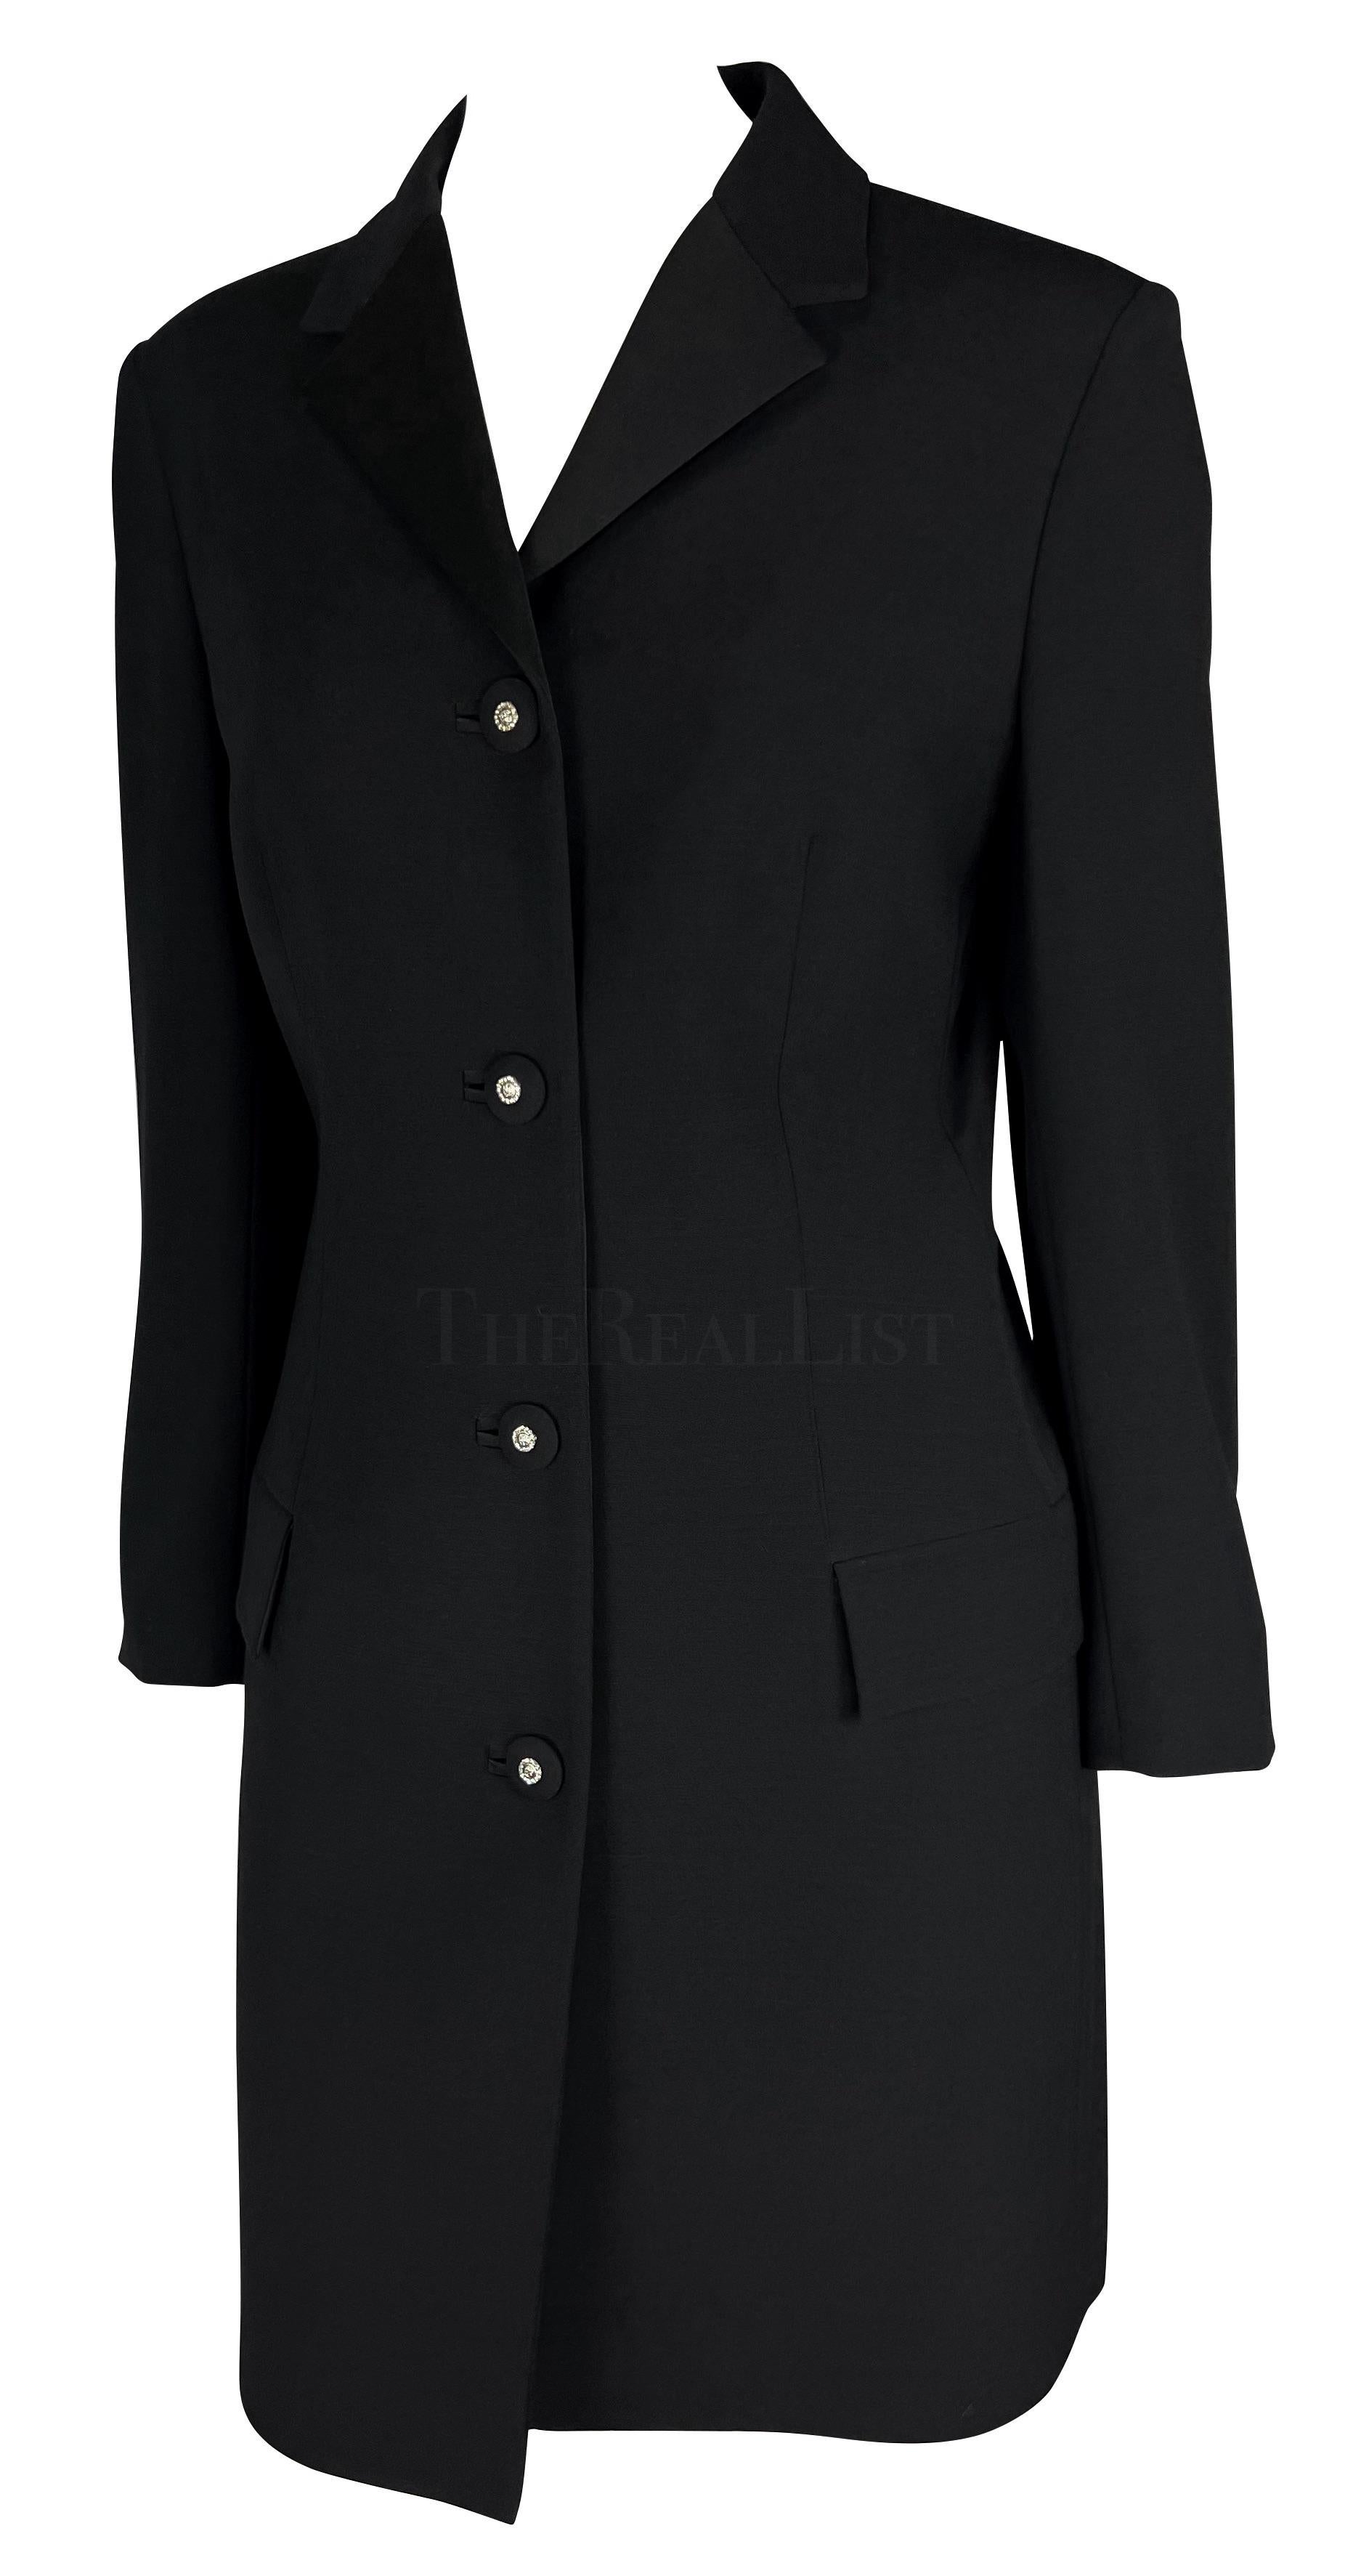 Dieser wunderschöne schwarze Wollmantel wurde von Gianni Versace für seine Herbst/Winter-Kollektion 1996 entworfen, wobei mehrere ähnliche lange Mäntel auf dem Laufsteg der Saison zu sehen waren. Die Jacke hat ein kurzes Revers und strassbesetzte